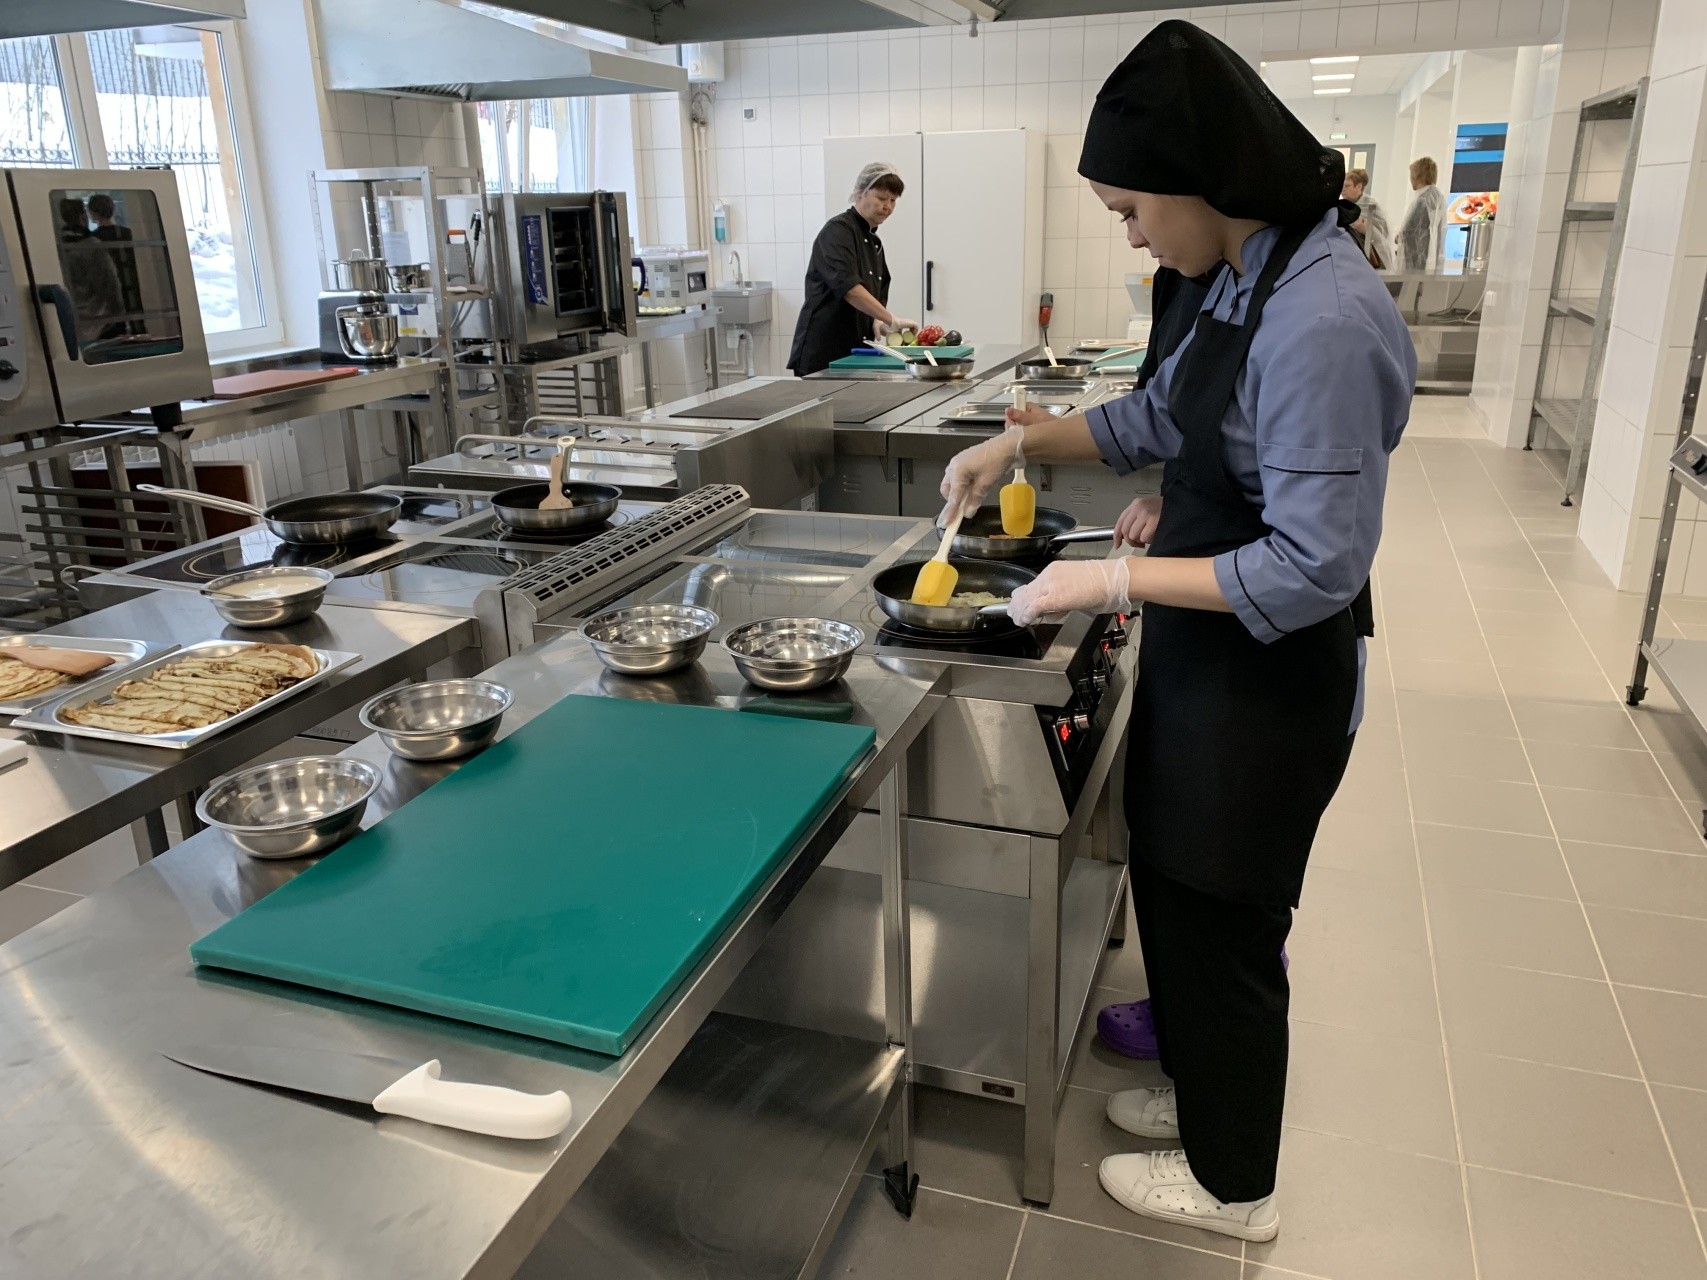 Koulutuskeskuksen opiskelijat oppivat laittamaan ruokaa, jota myydään sitten opiston ruokalassa. Kuva: Ilona Veikkolainen